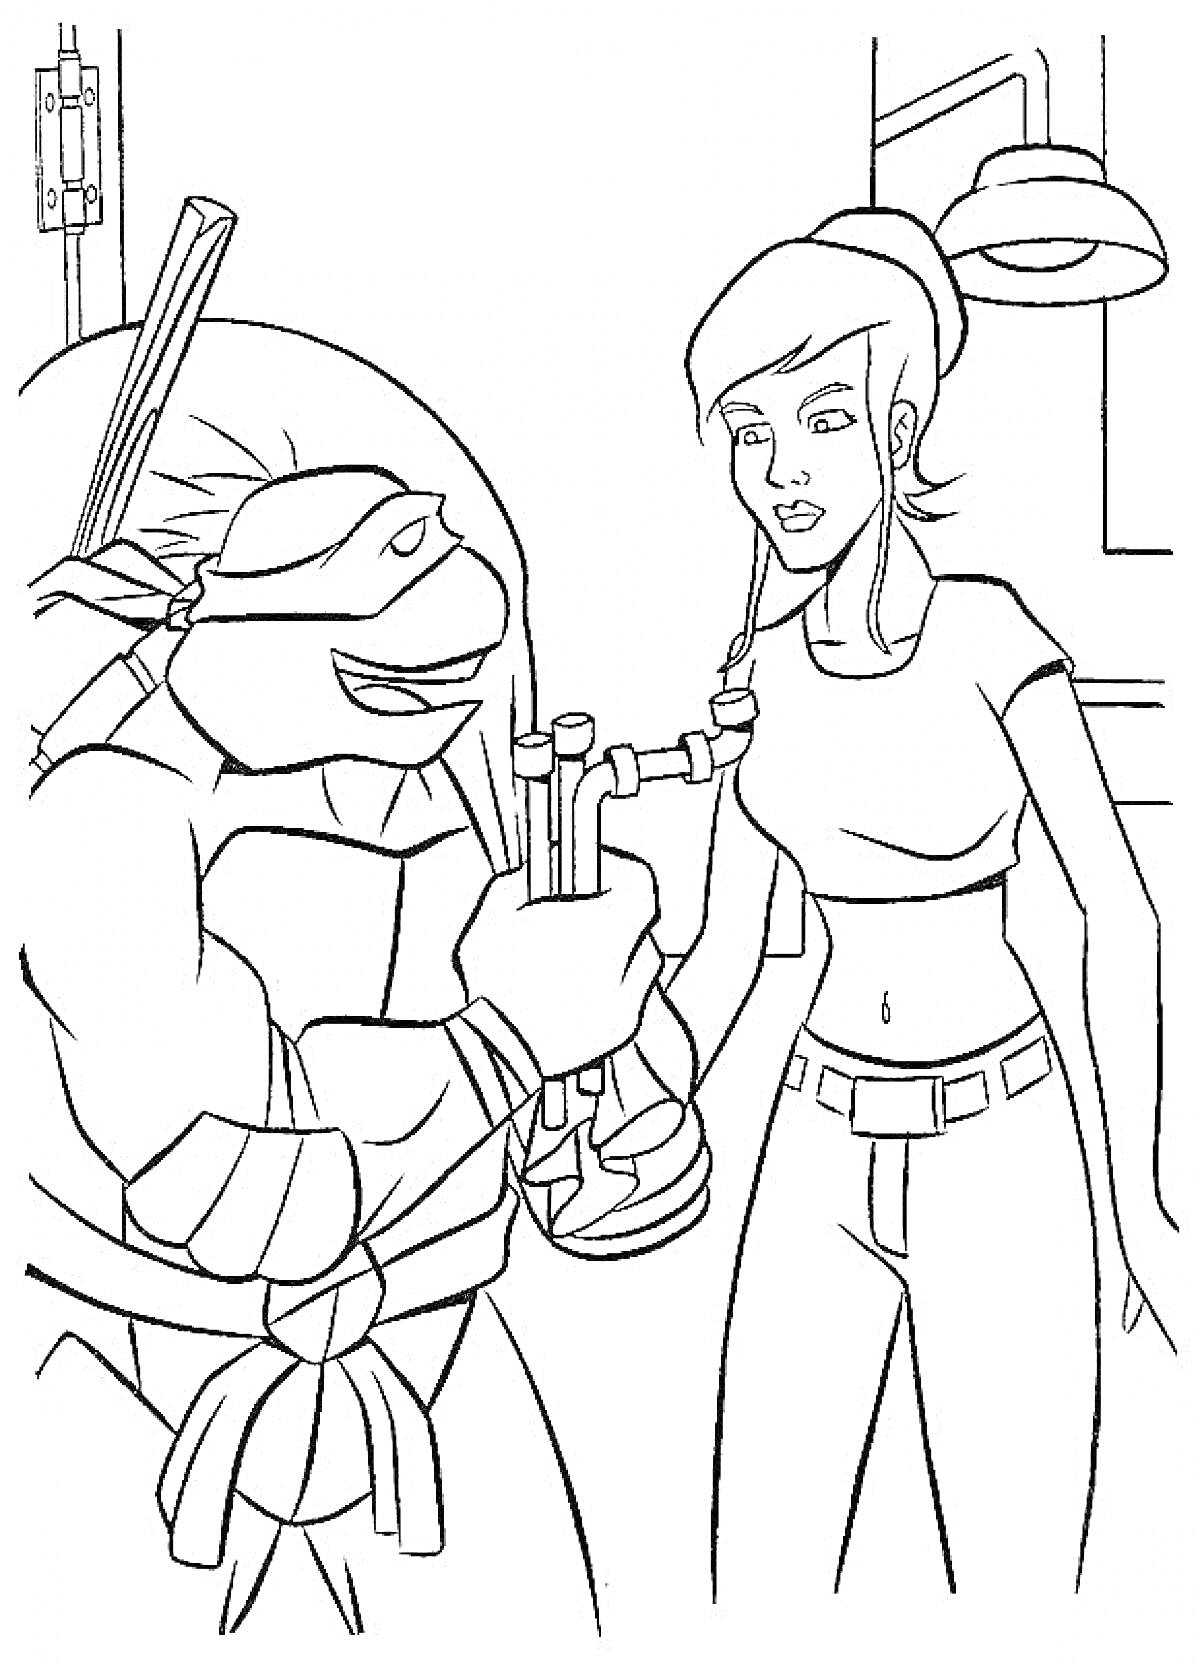 Раскраска Черепашка-ниндзя и девушка в лаборатории, он держит пробирку, на фоне лампа и детали интерьера